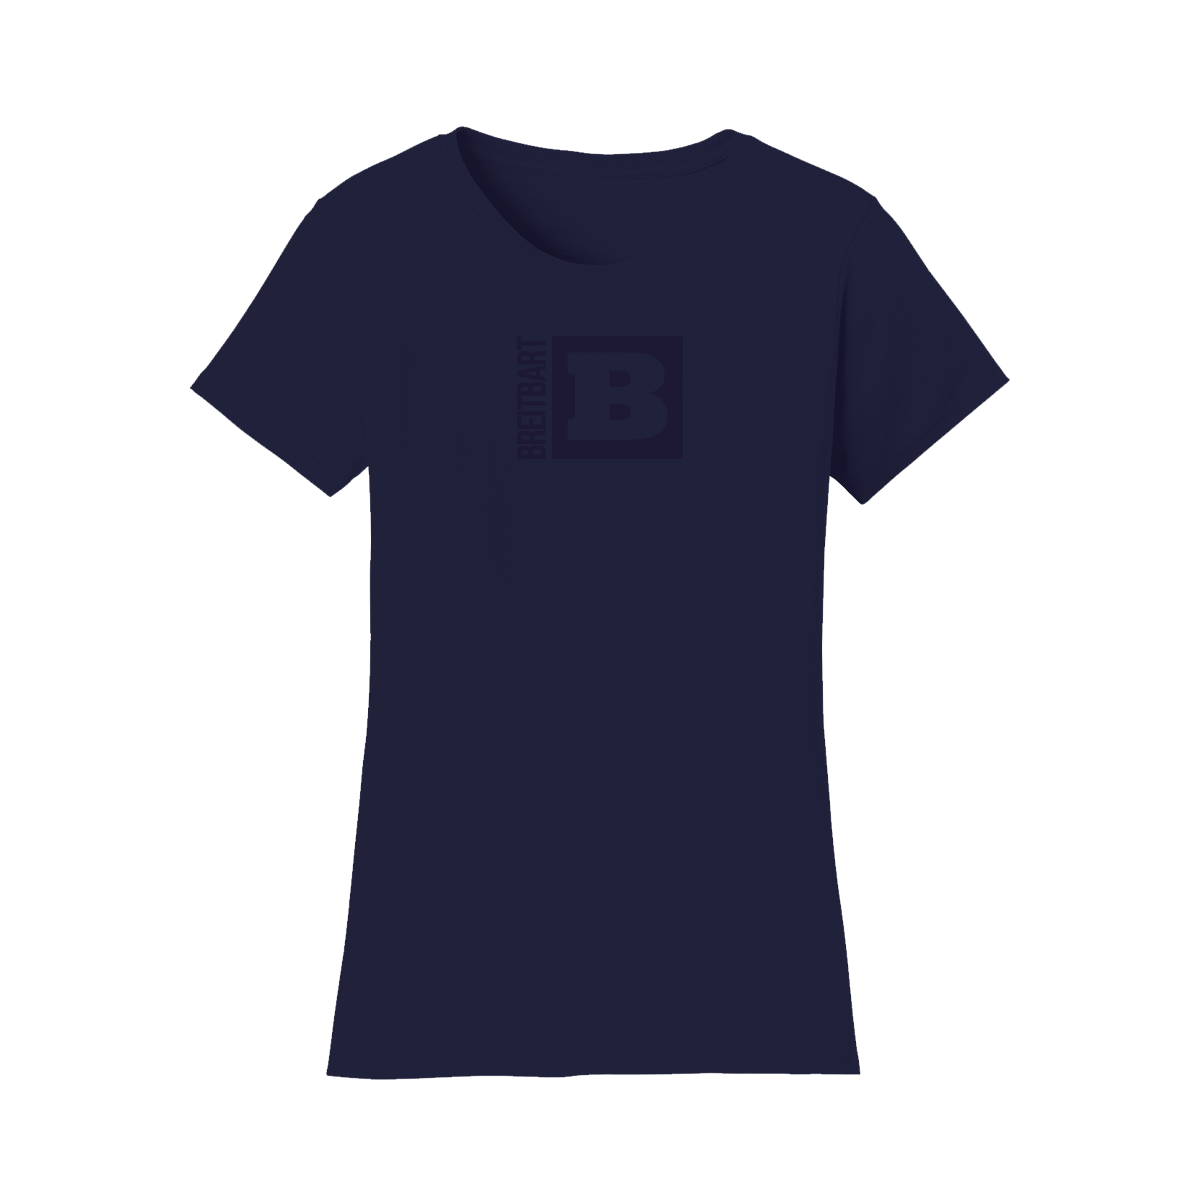 Official Breitbart Logo Women's T-Shirt - Navy